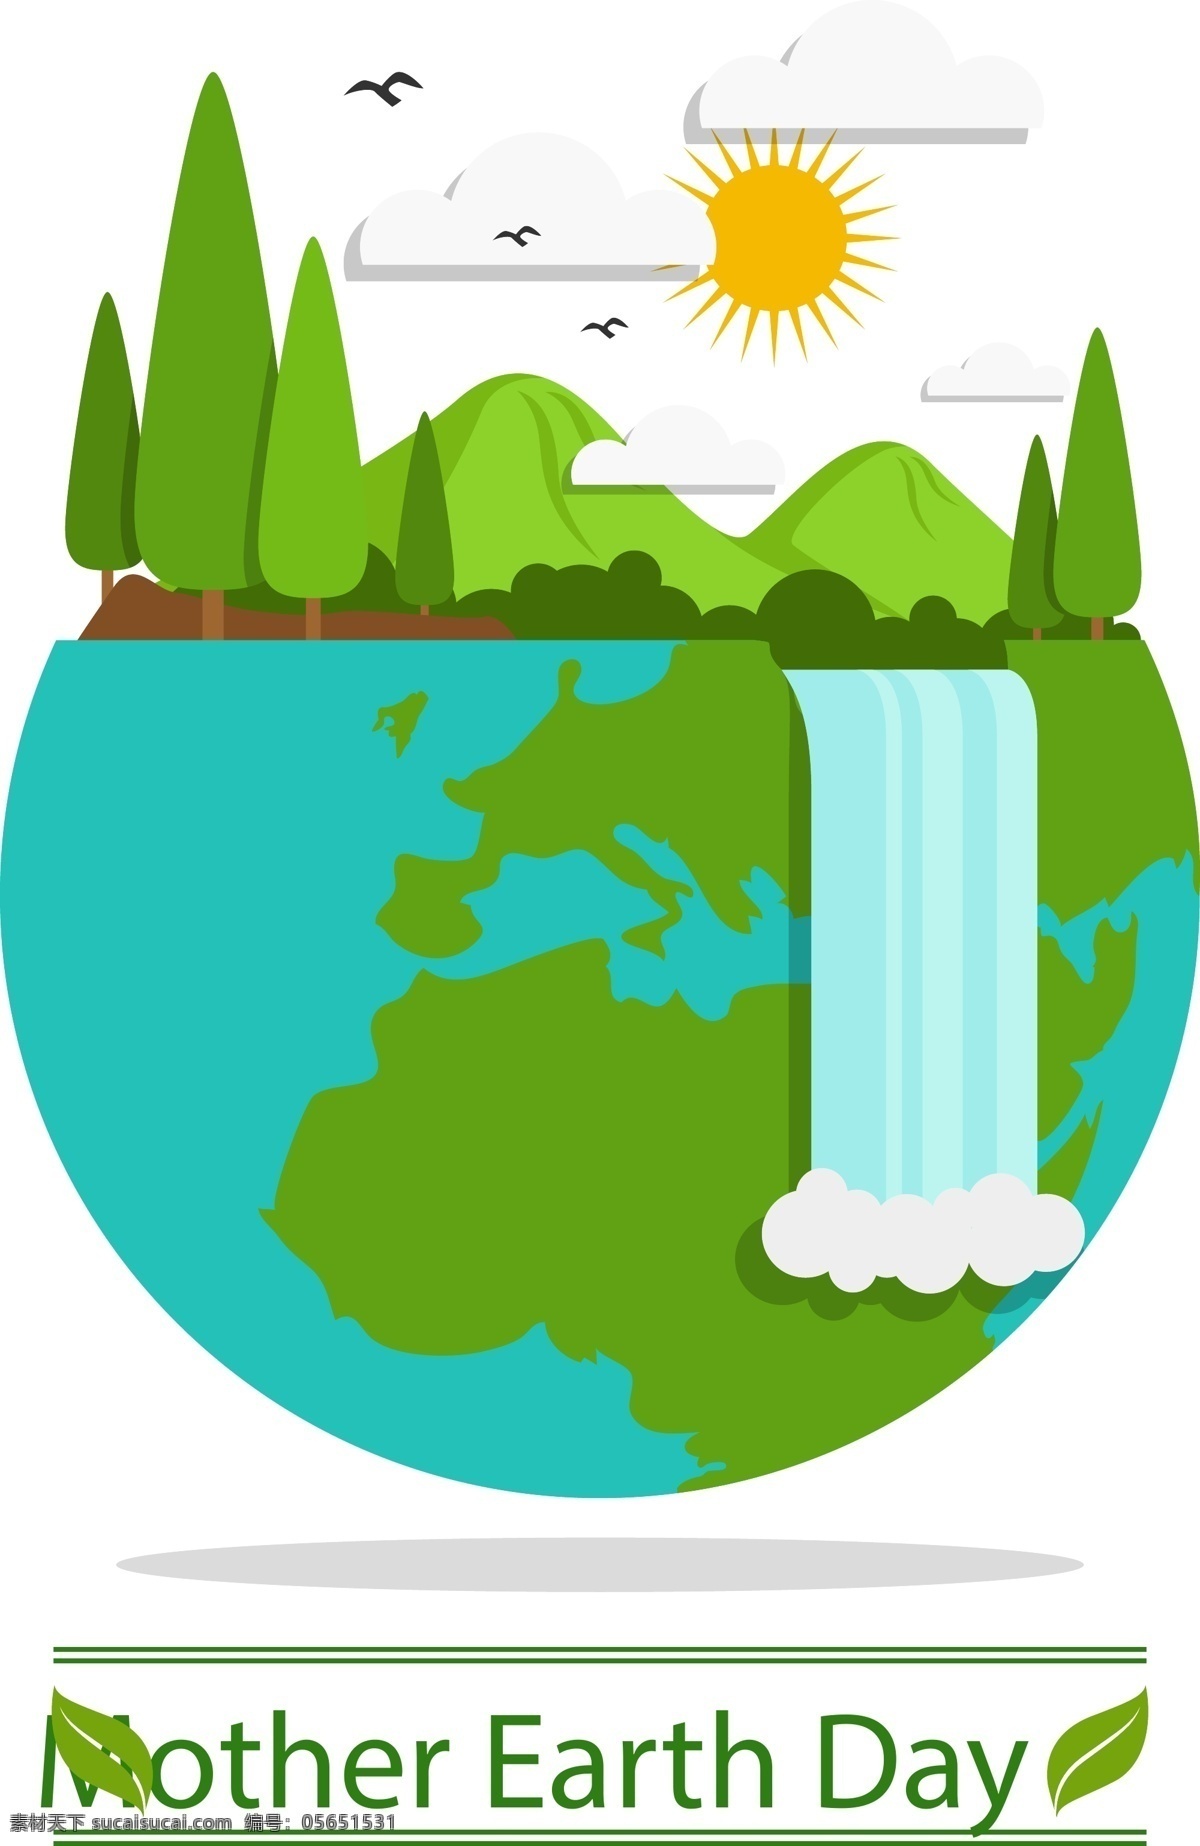 地球日 卡通 元素 创意世界 世界地球日 鸟 云朵 树木 草地 太阳 树叶 自然 瀑布 风景 环保海报 提高环境意识 环境保护 保护环境 公益宣传 善待地球 保护资源环境 美好家园 爱护地球 绿色 4月22日